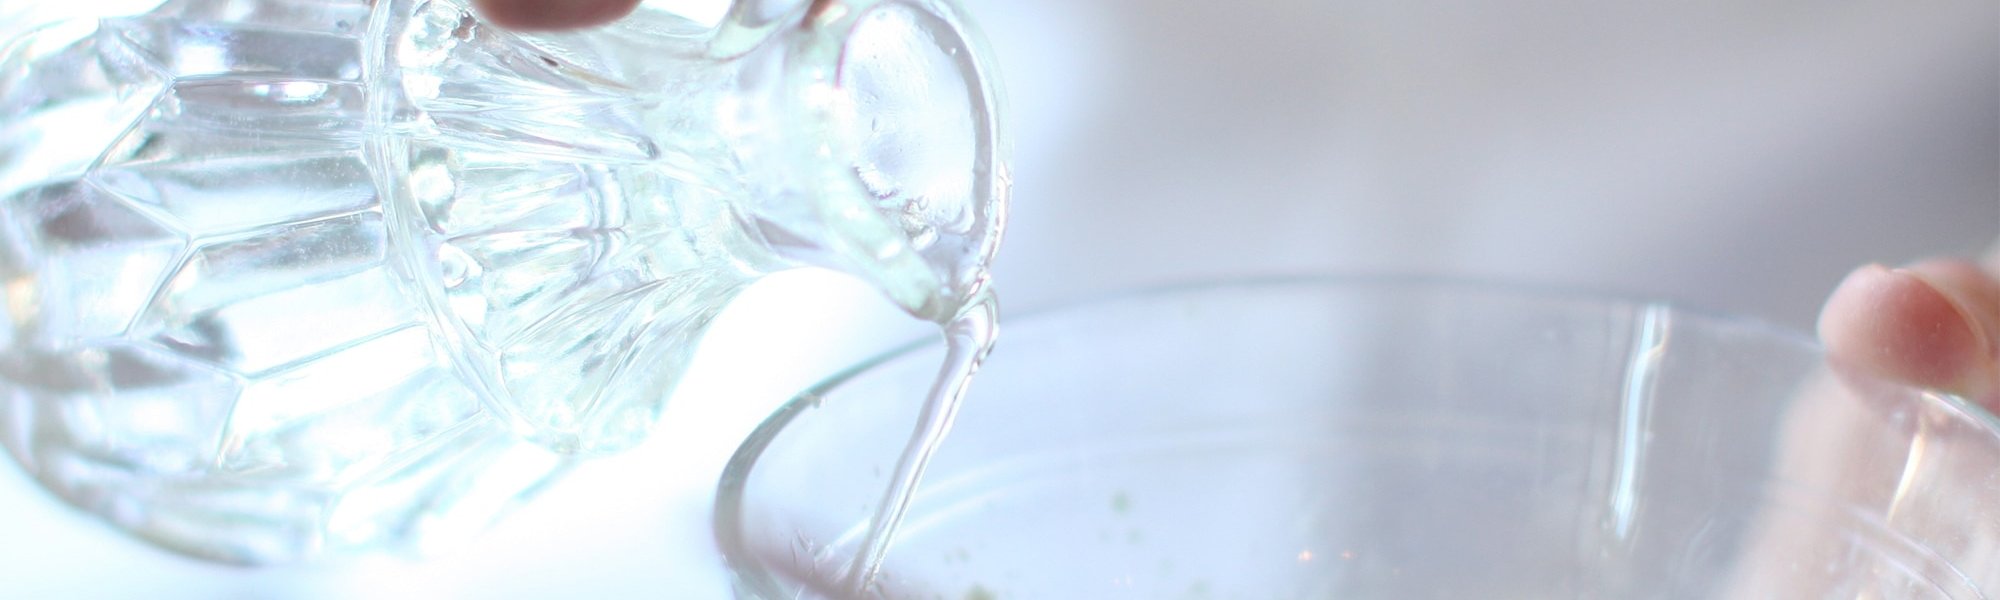 Thermalwasser wird aus einem kleinen Glaskännchen in eine Schüssel mit Pulver geschüttet